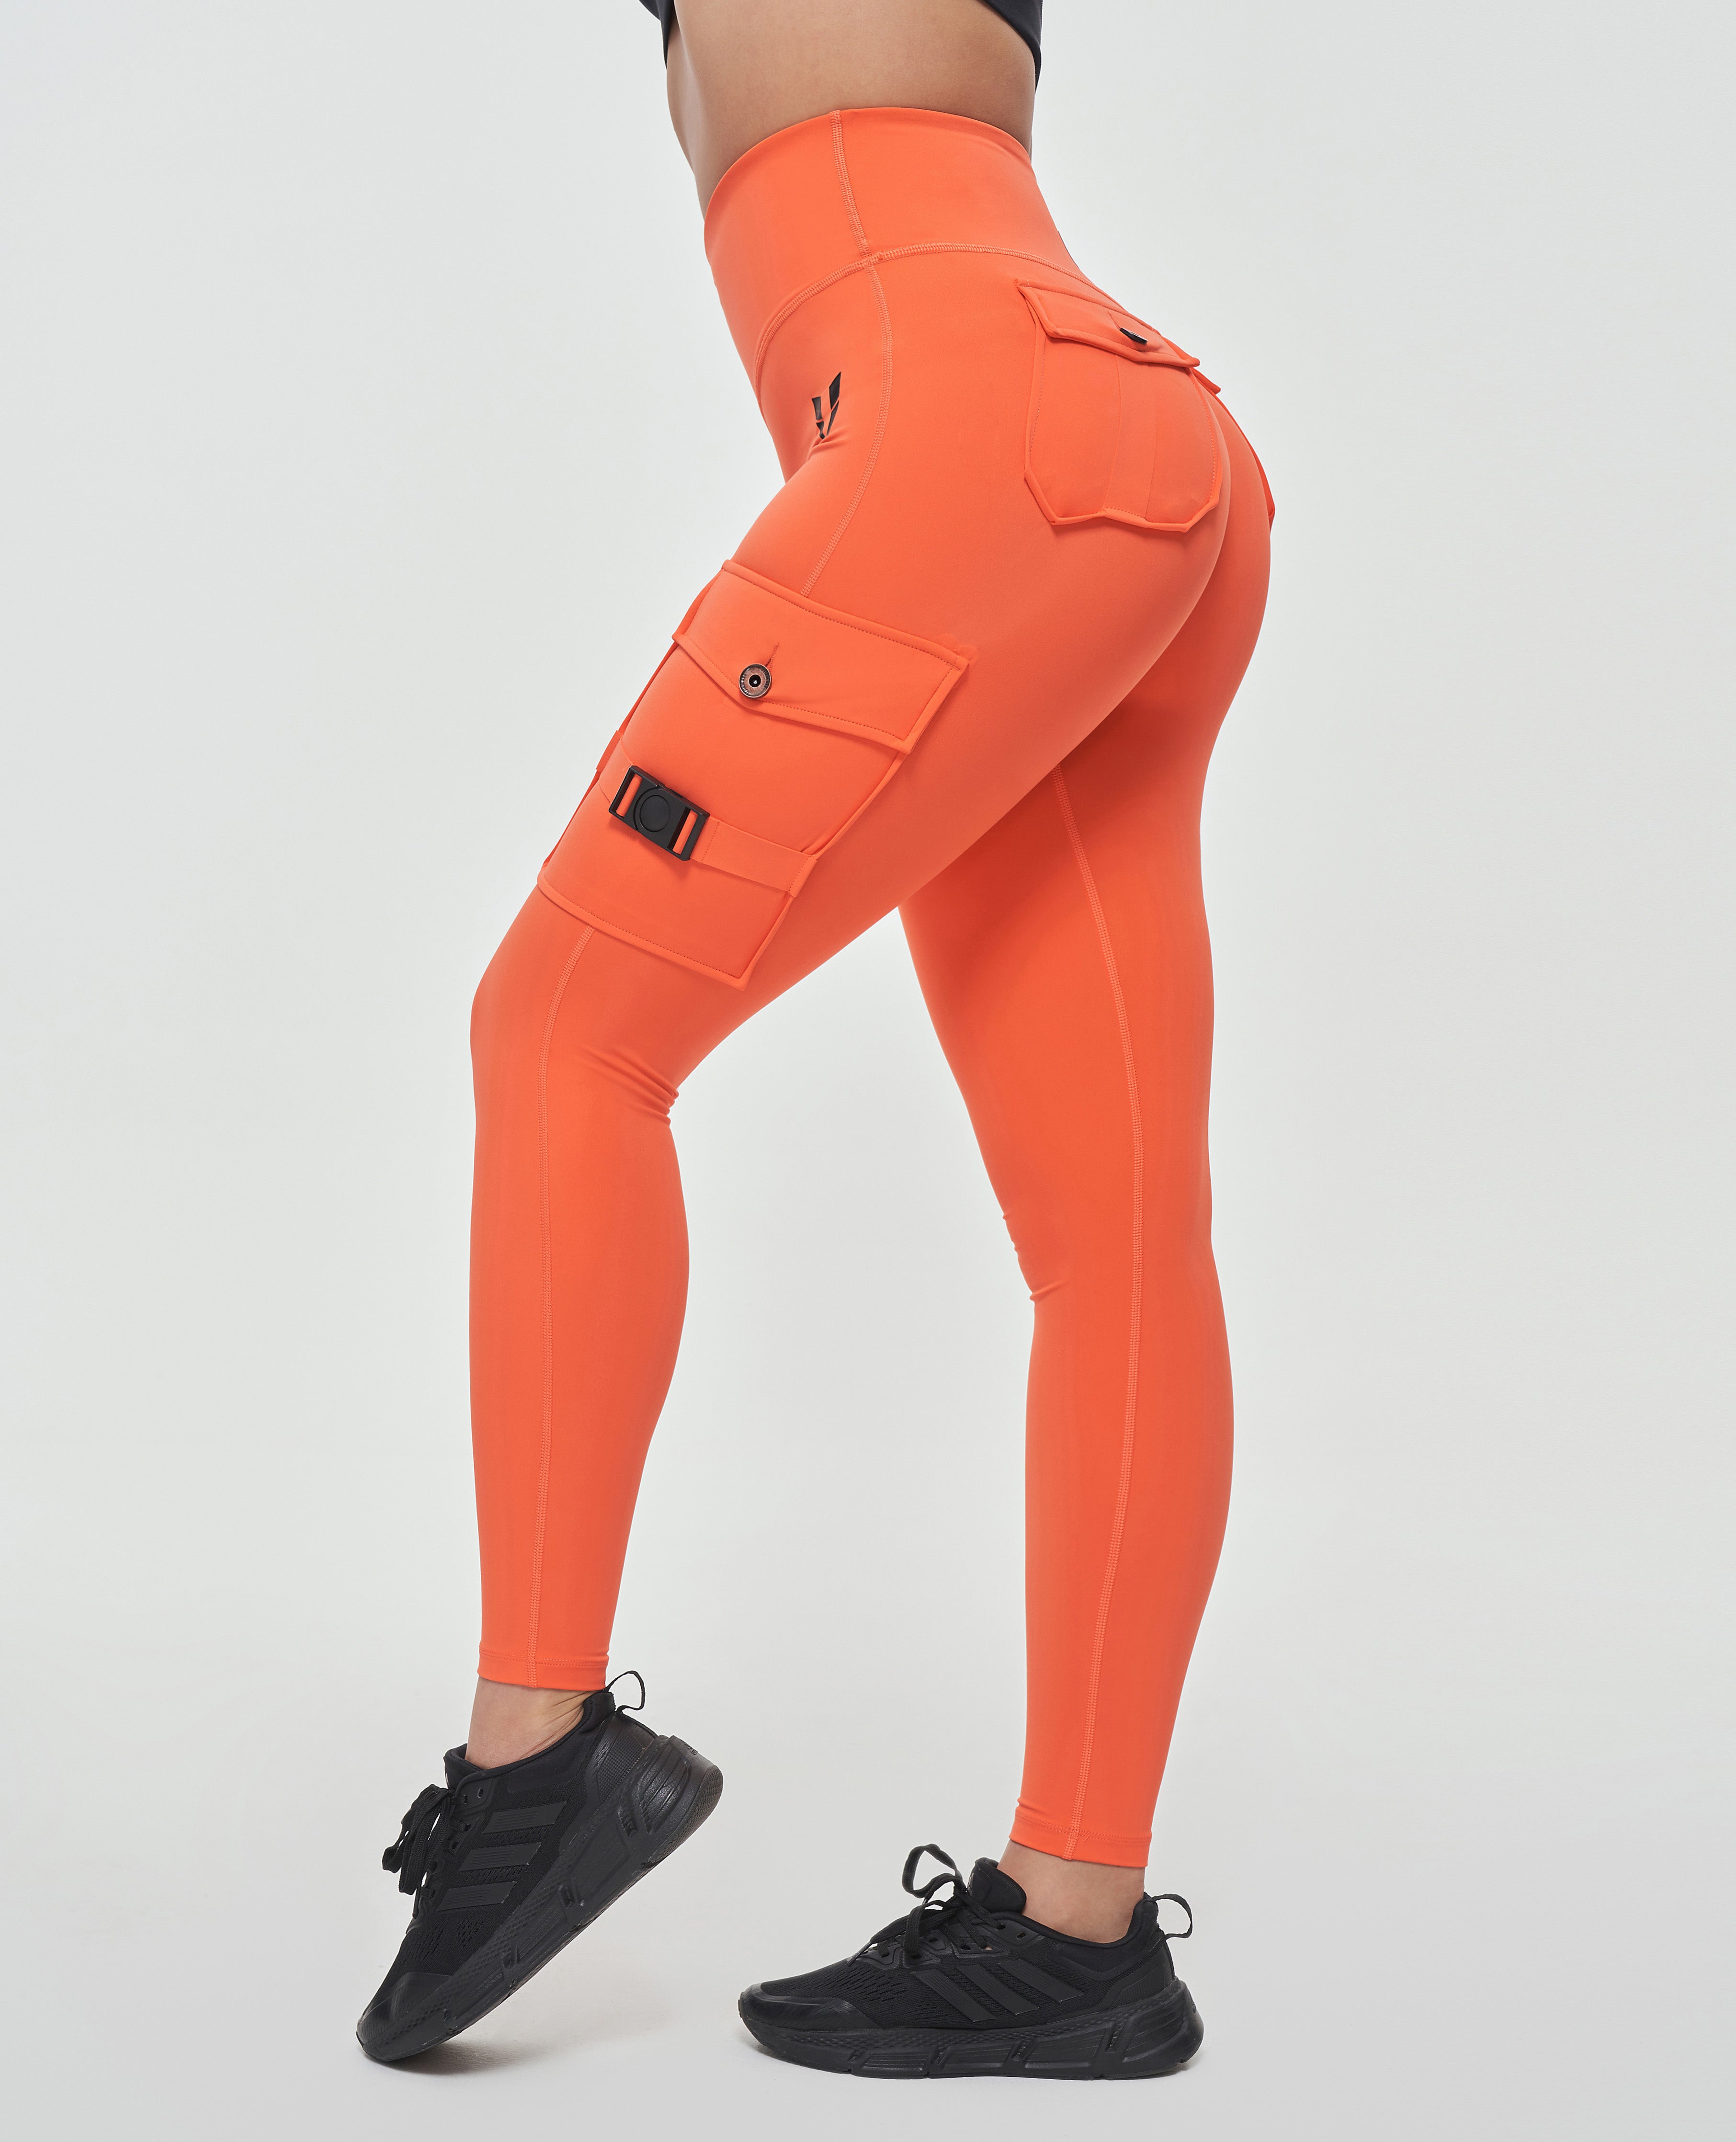 Legging cargo fitness orange